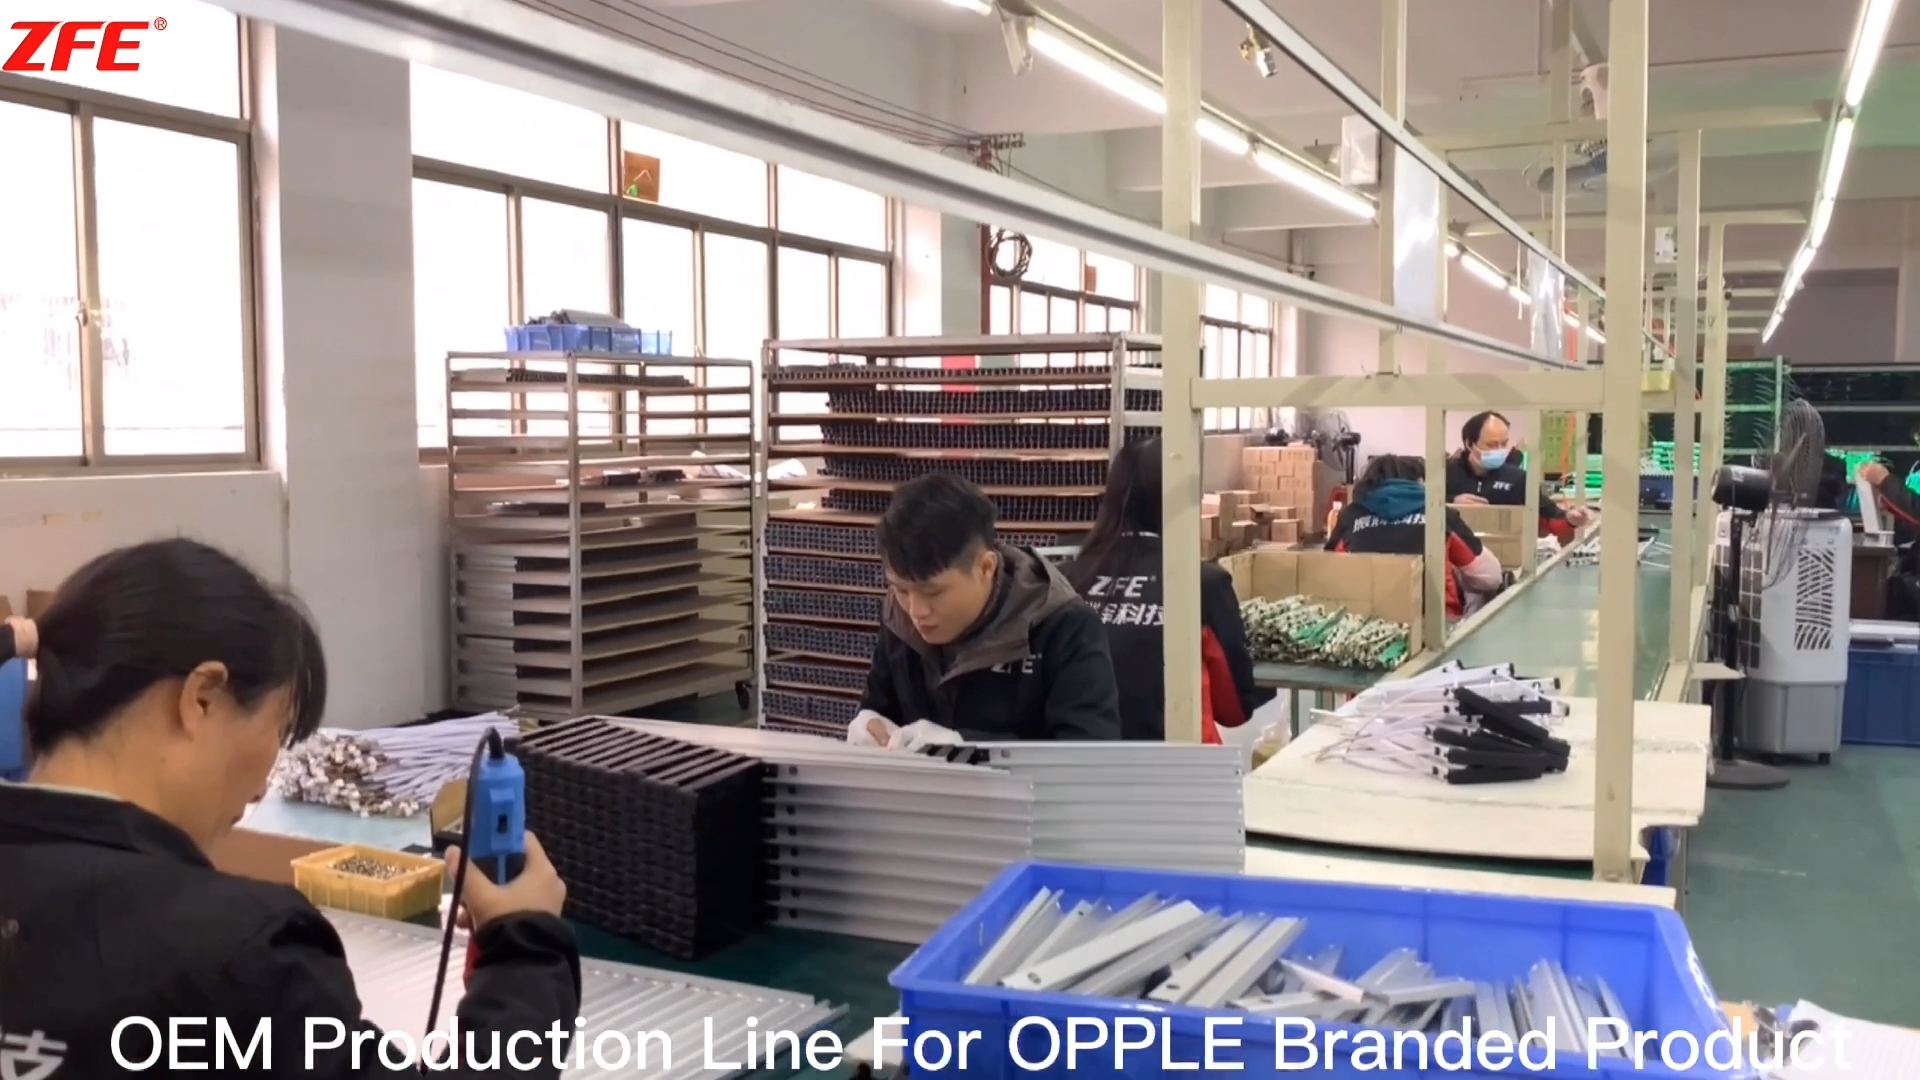 Linie de producție OEM personalizată pentru produs de marcă OPPLE, fabricat de Guangdong Zhenhui Fire Technology